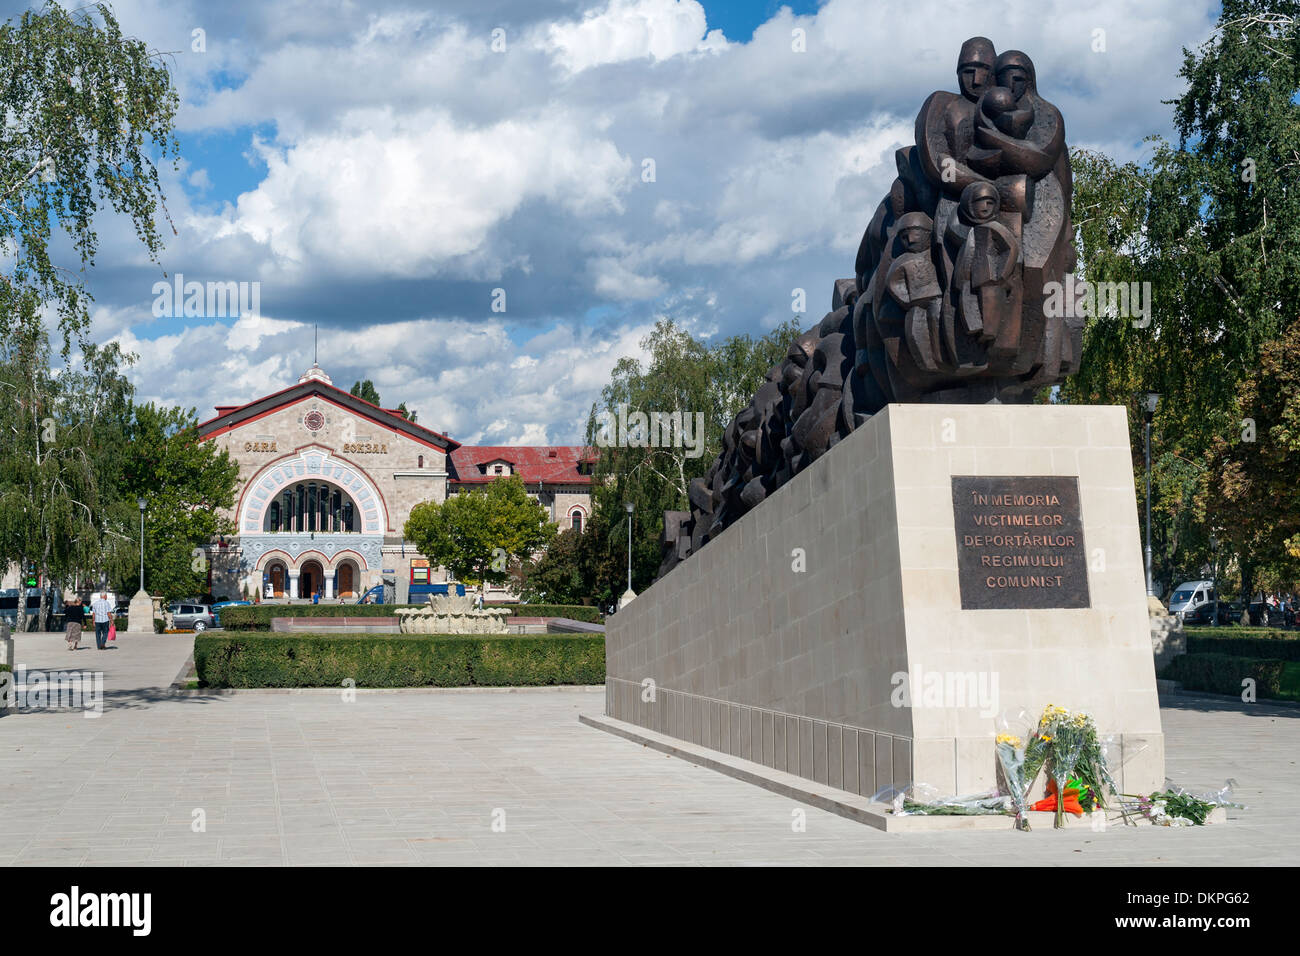 Denkmal vor der Chisinau Bahnhof an die Deportierten durch das kommunistische Regime in Chisinau, der Hauptstadt der Republik Moldau. Stockfoto